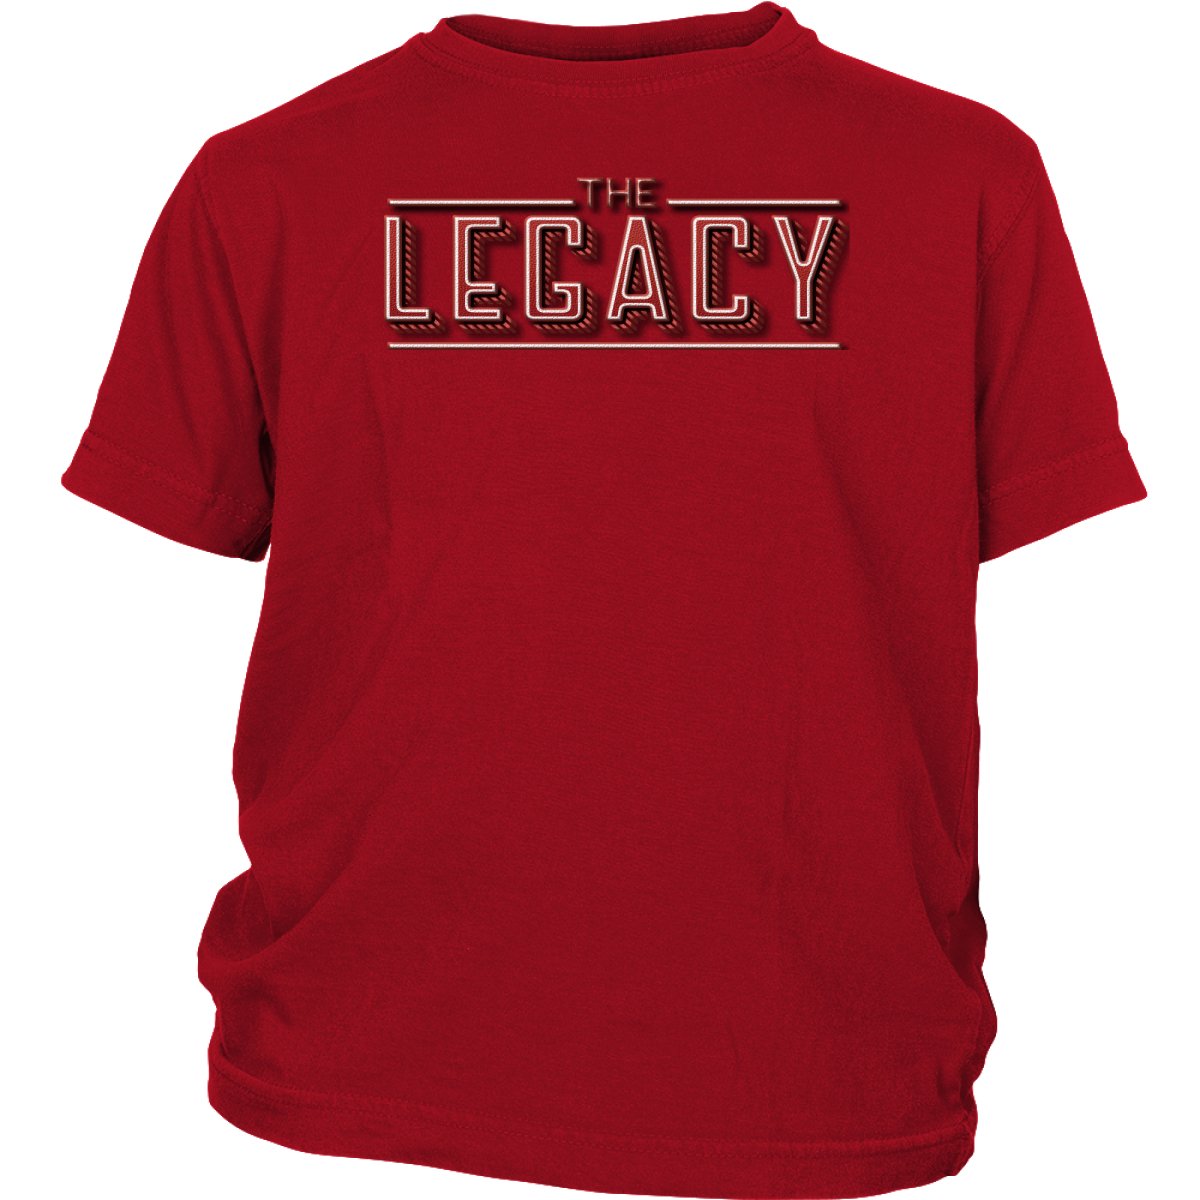 The Legend & The Legacy Shirt Set - Beguiling Phenix Boutique